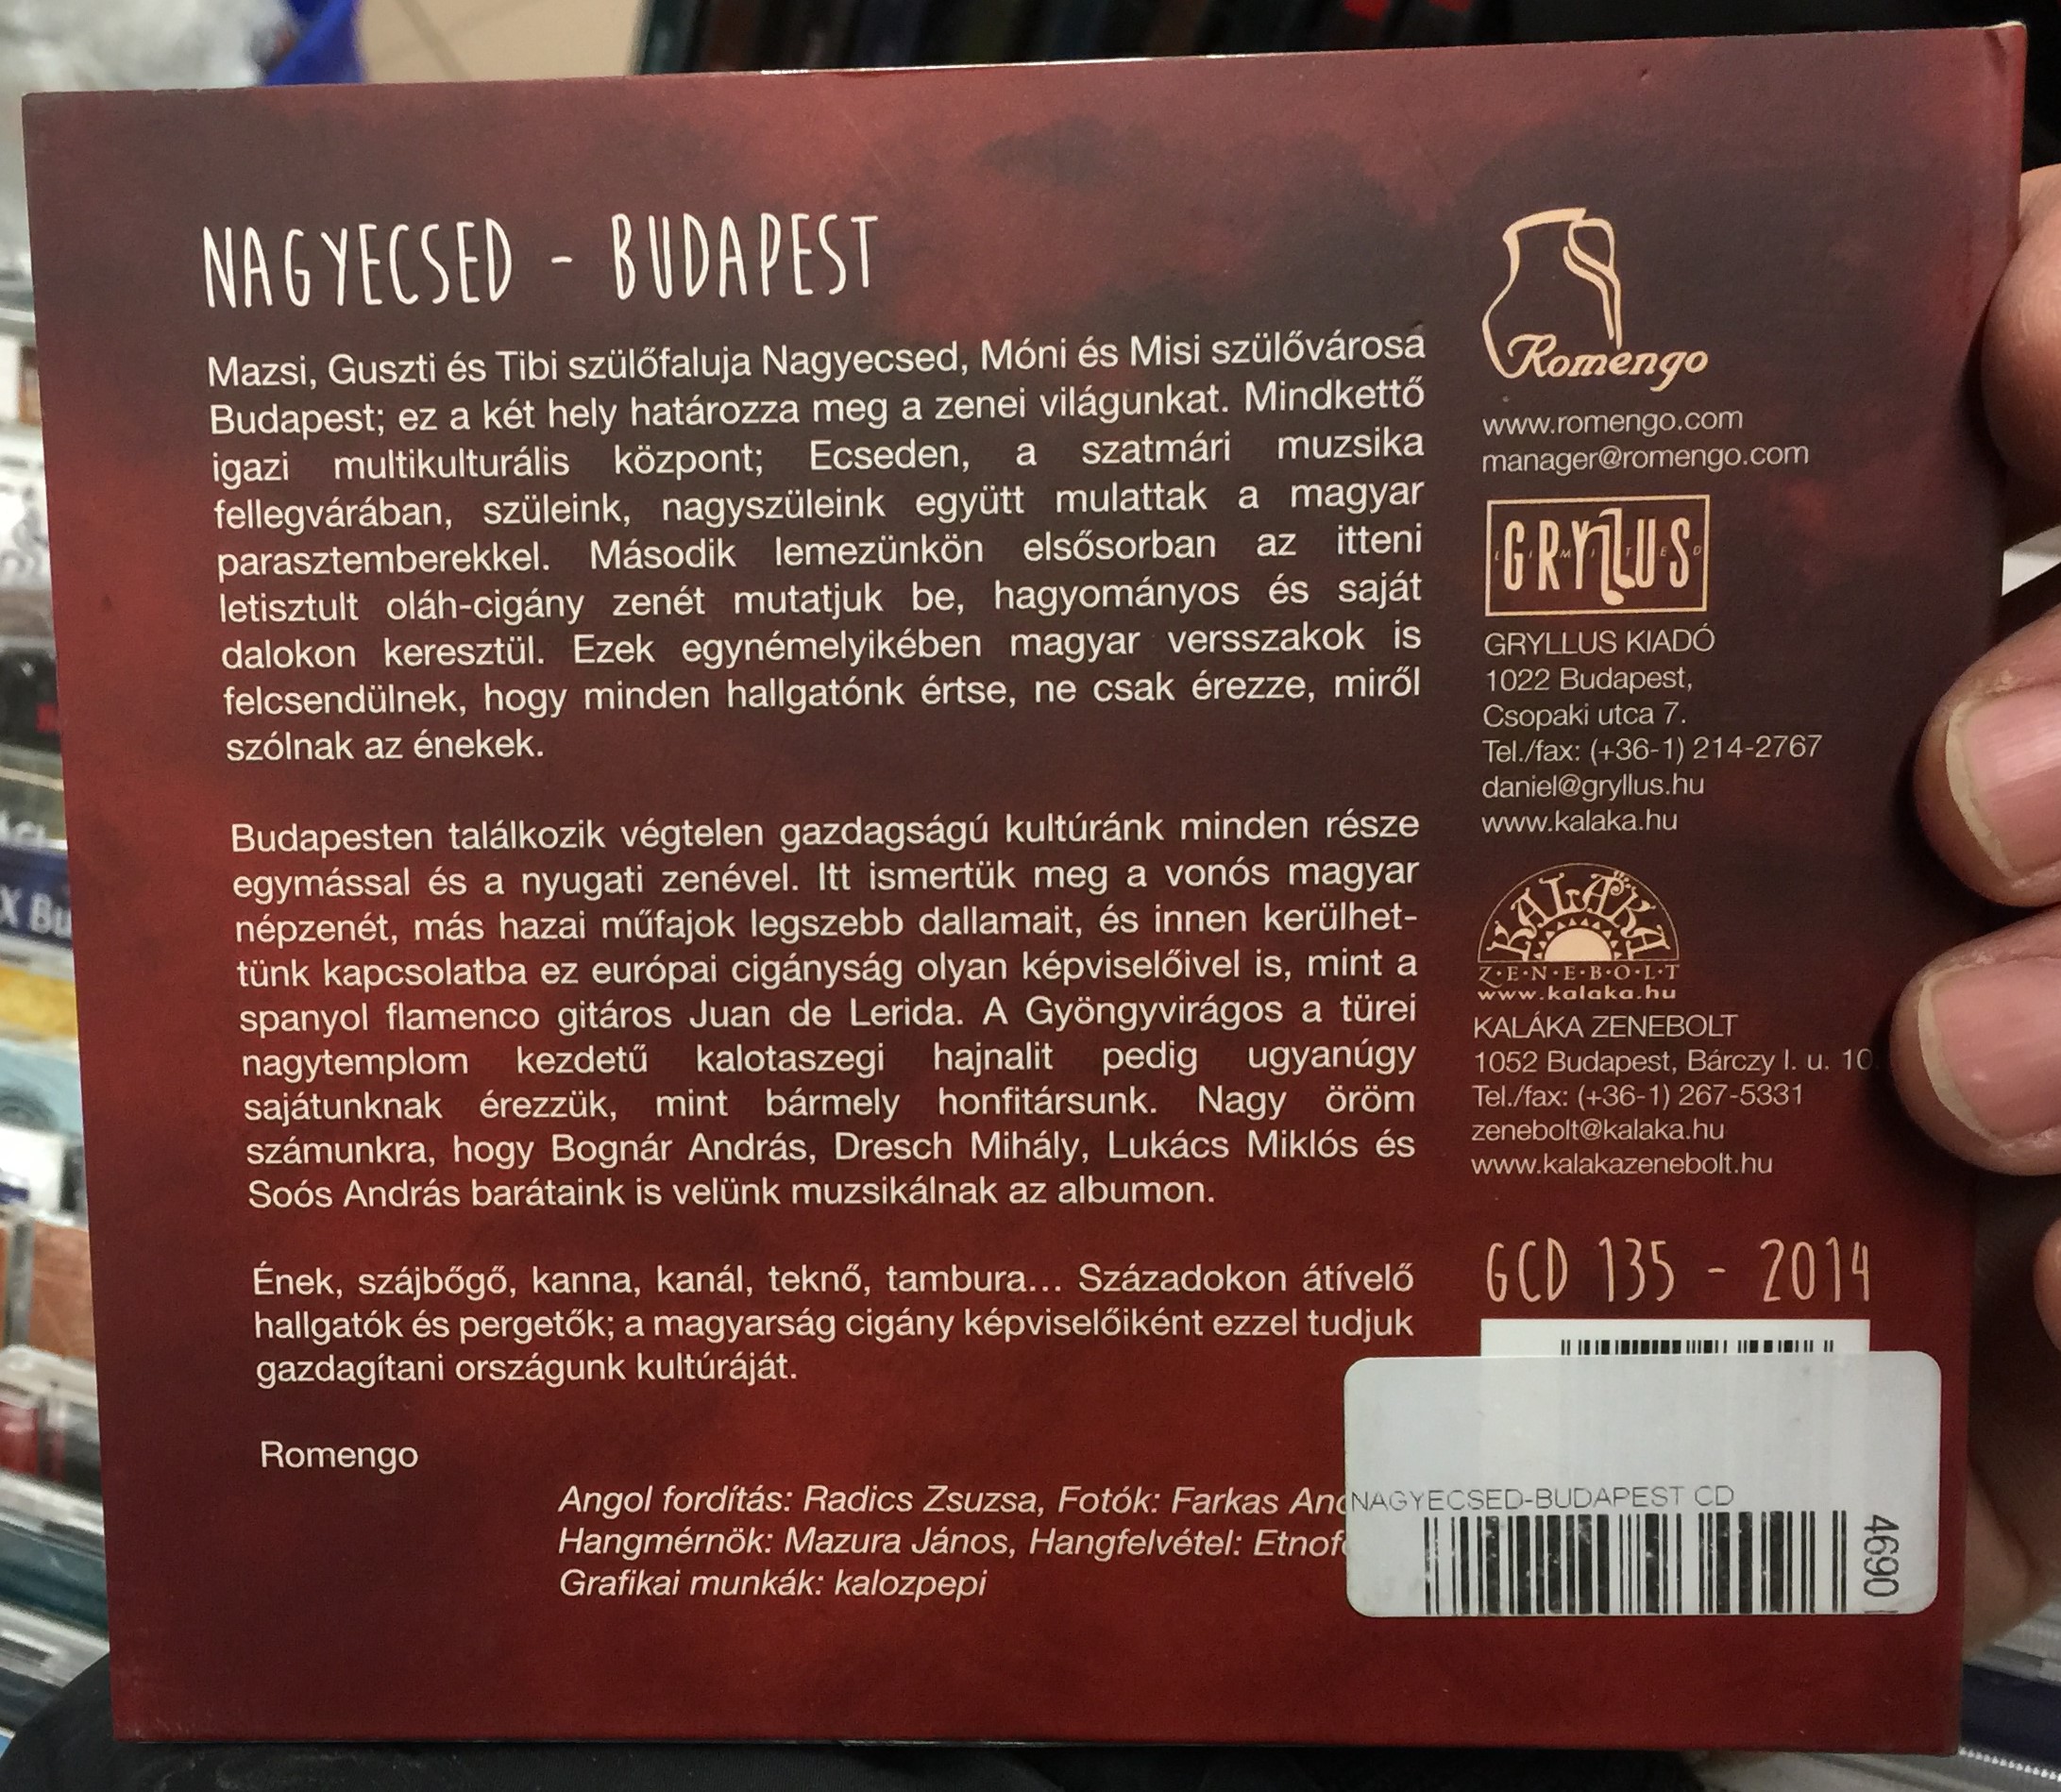 romengo-nagyecsed-budapest-lakatos-monika-gryllus-audio-cd-2014-gcd-135-2-.jpg